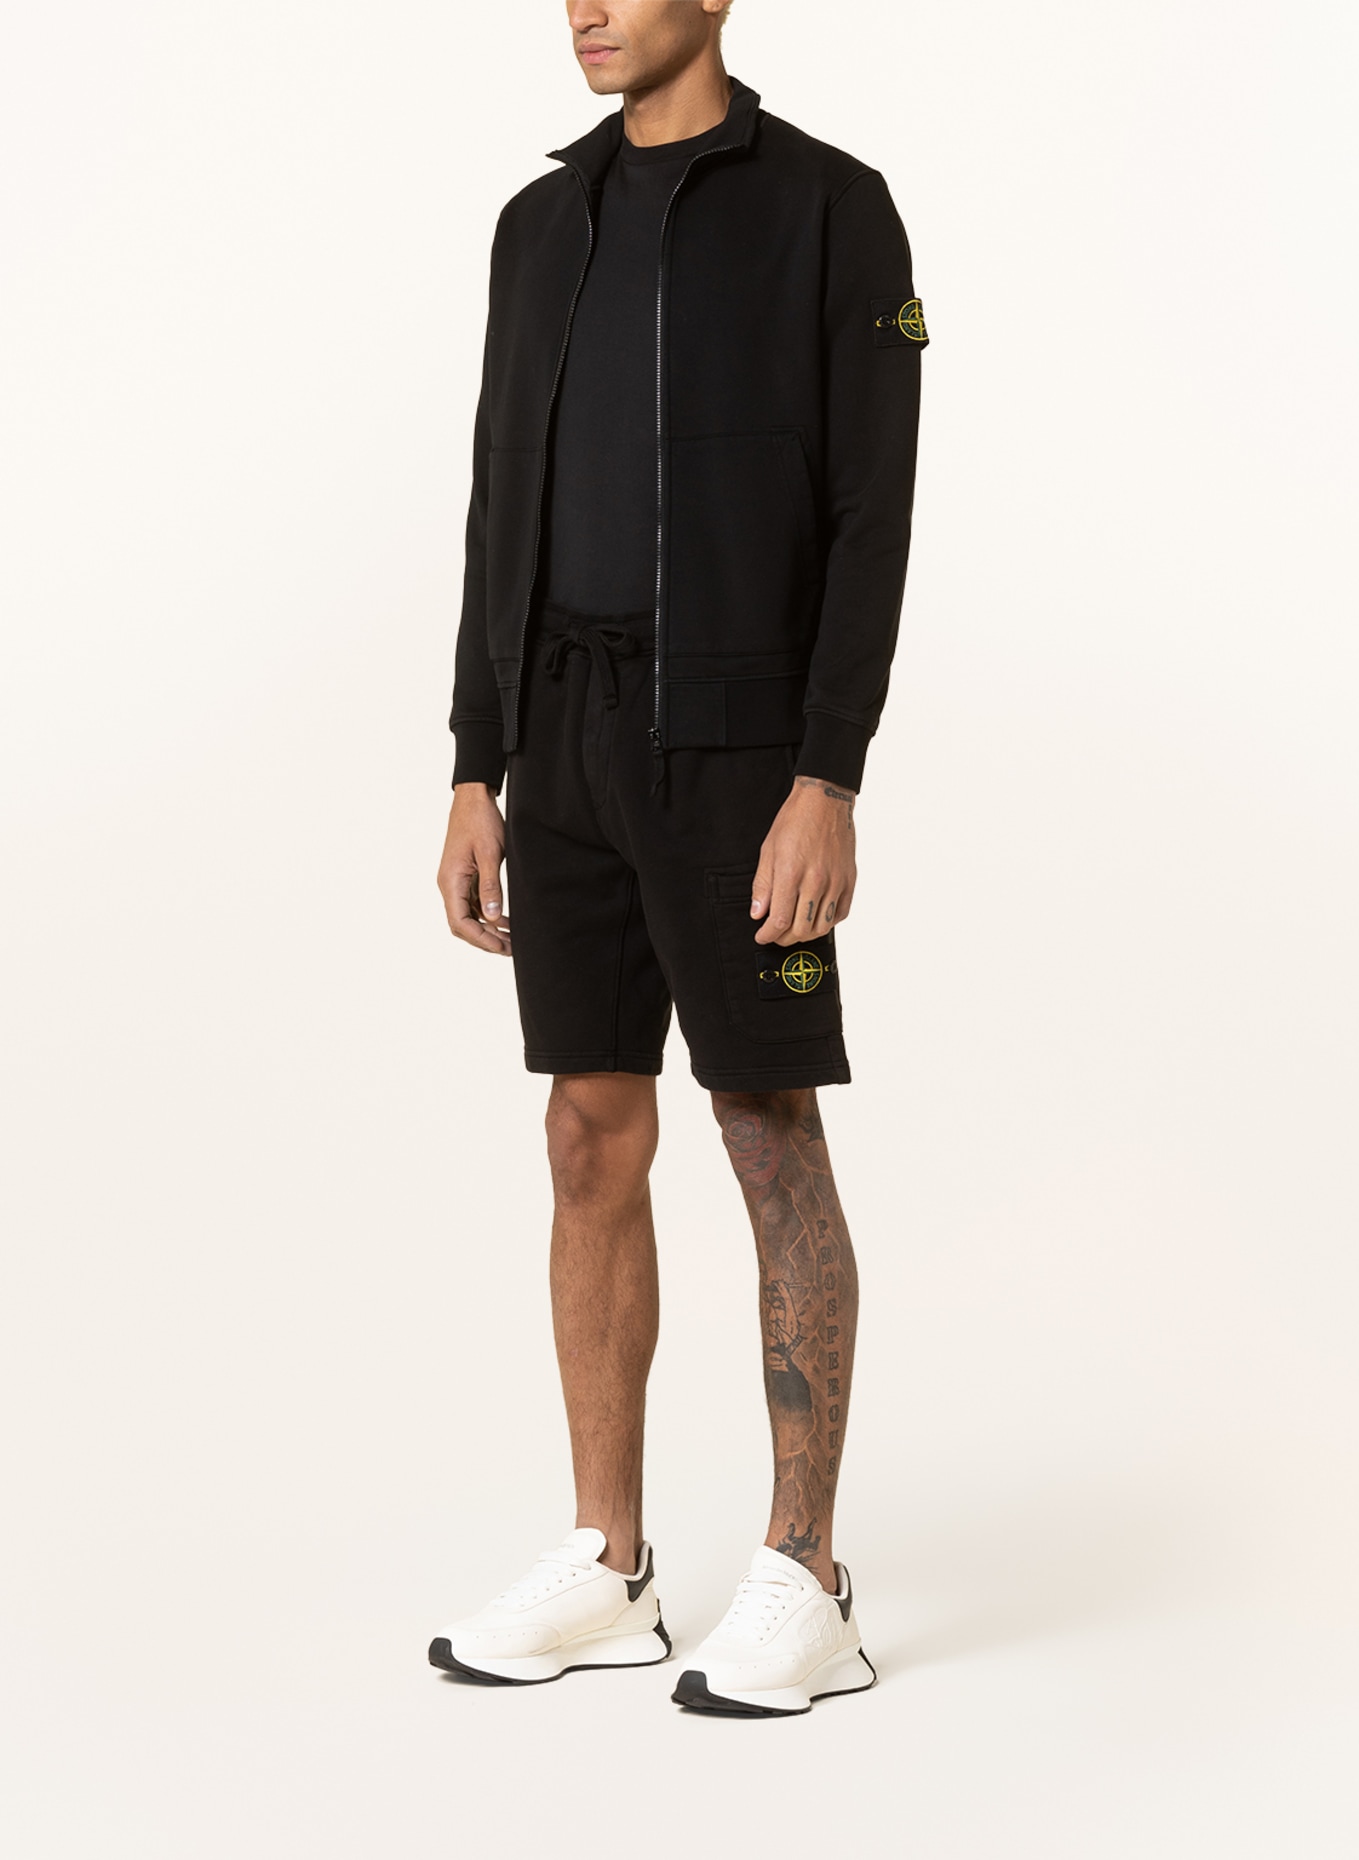 STONE ISLAND Sweat jacket, Color: BLACK (Image 2)